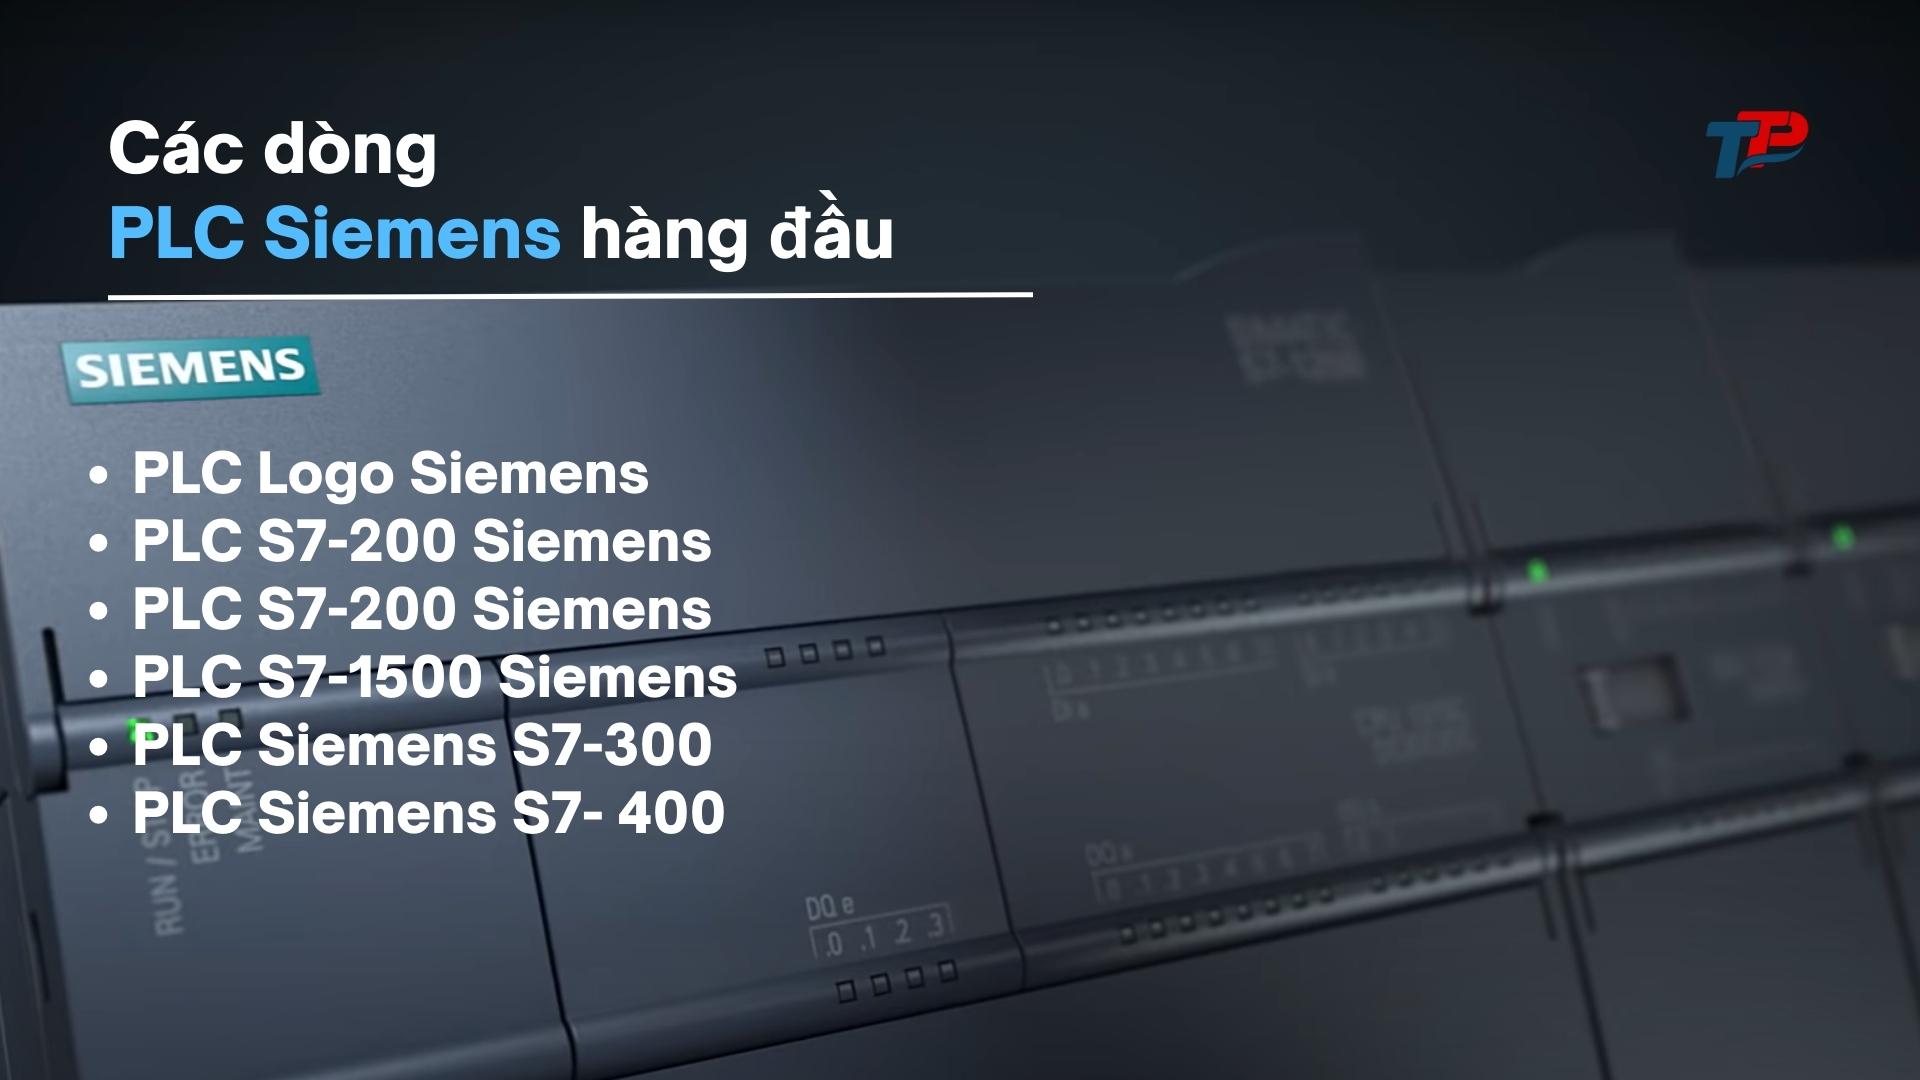 Các dòng PLC Siemens hàng đầu: